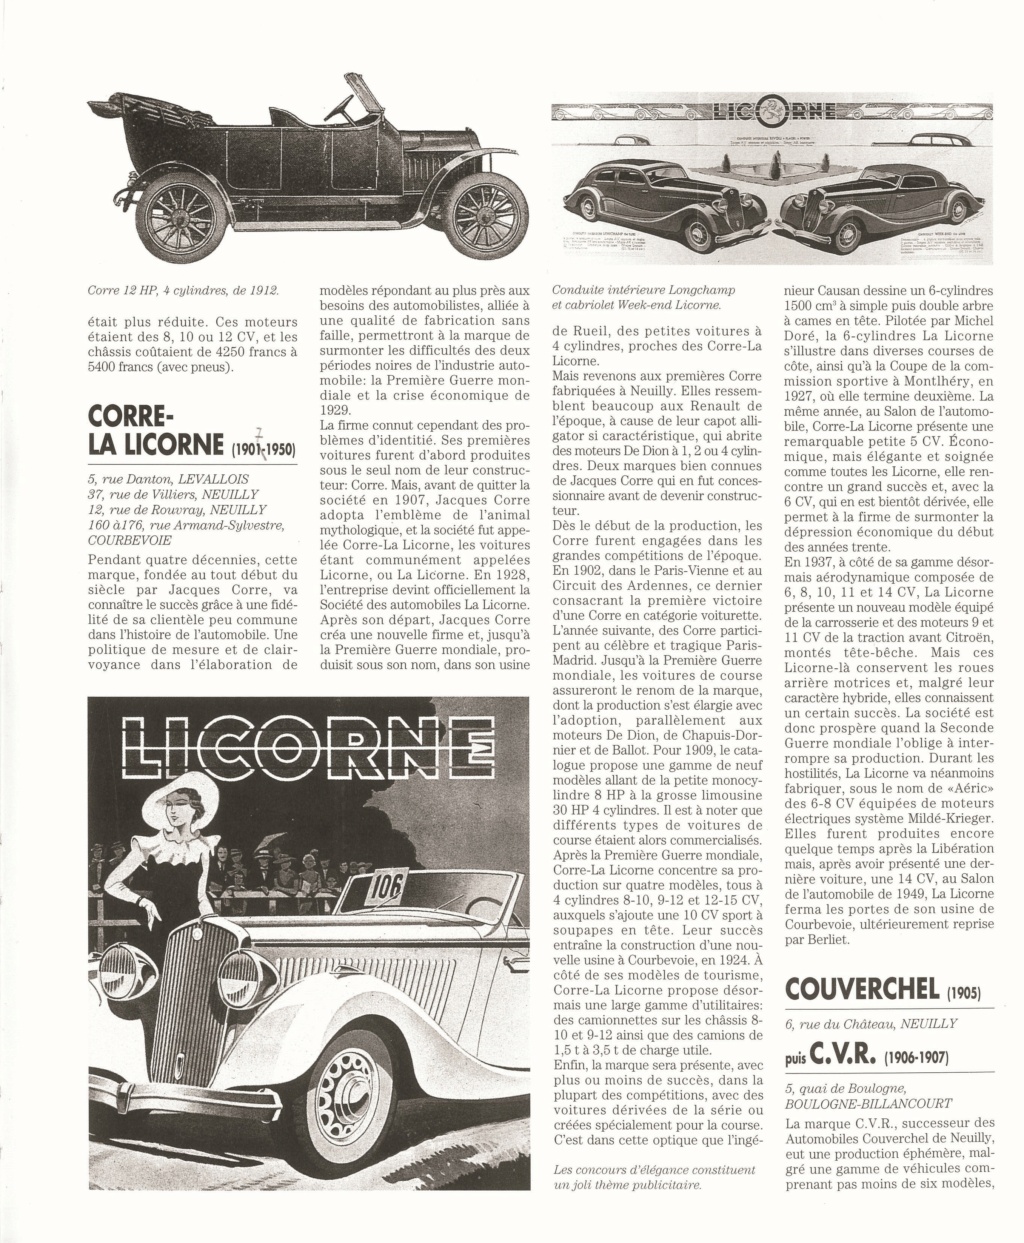 Livre " Haut de Seine - berceau de l' Automobile" ETAI de Jean Fondain H_de_s11